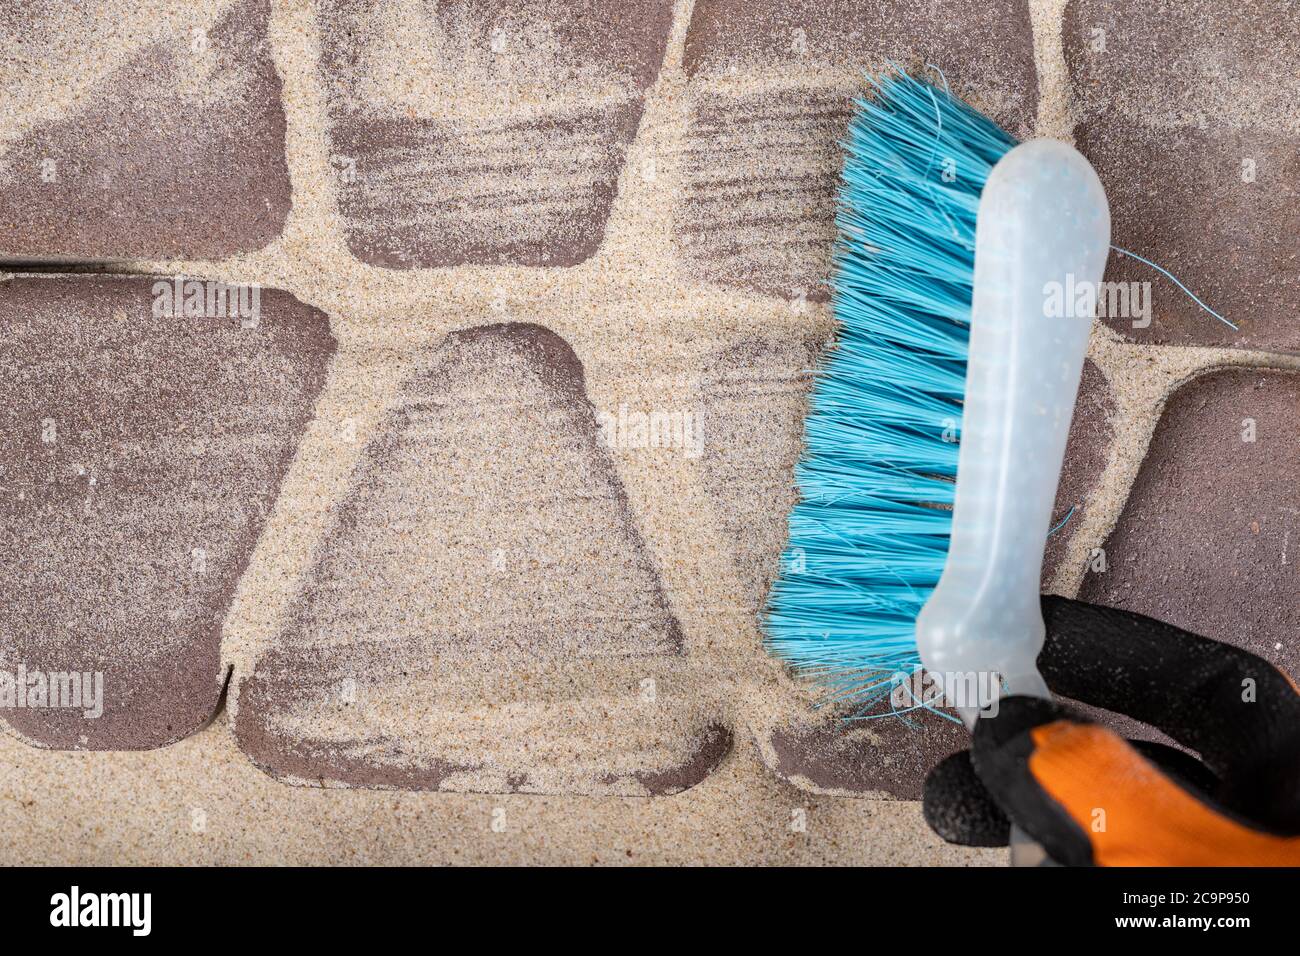 Pose de pavés sur du sable. Balai et sable pour lisser les joints dans la chaussée. Arrière-plan clair. Banque D'Images